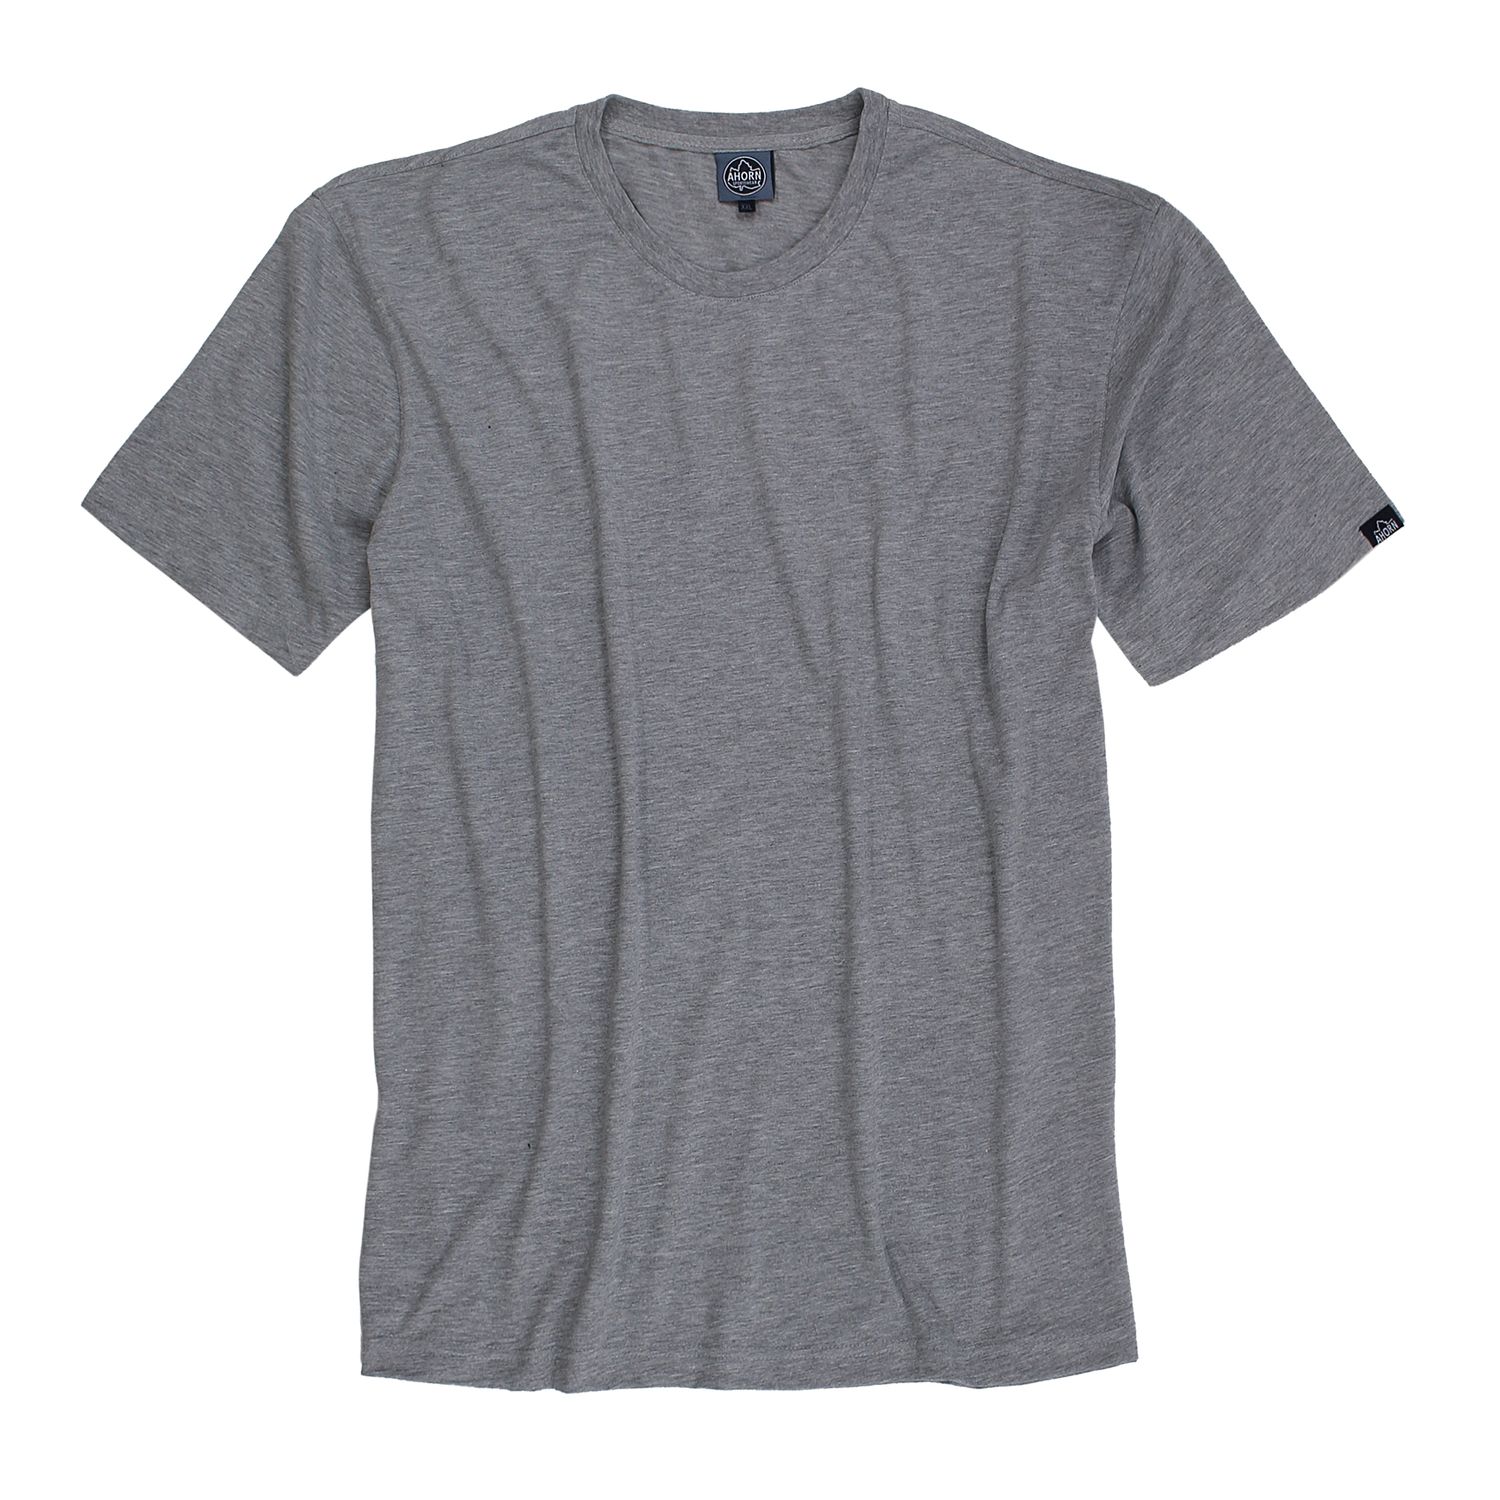 Lot de deux T-shirts gris chiné col rond by Ahorn Sportswear grandes tailles jusqu'au 10XL